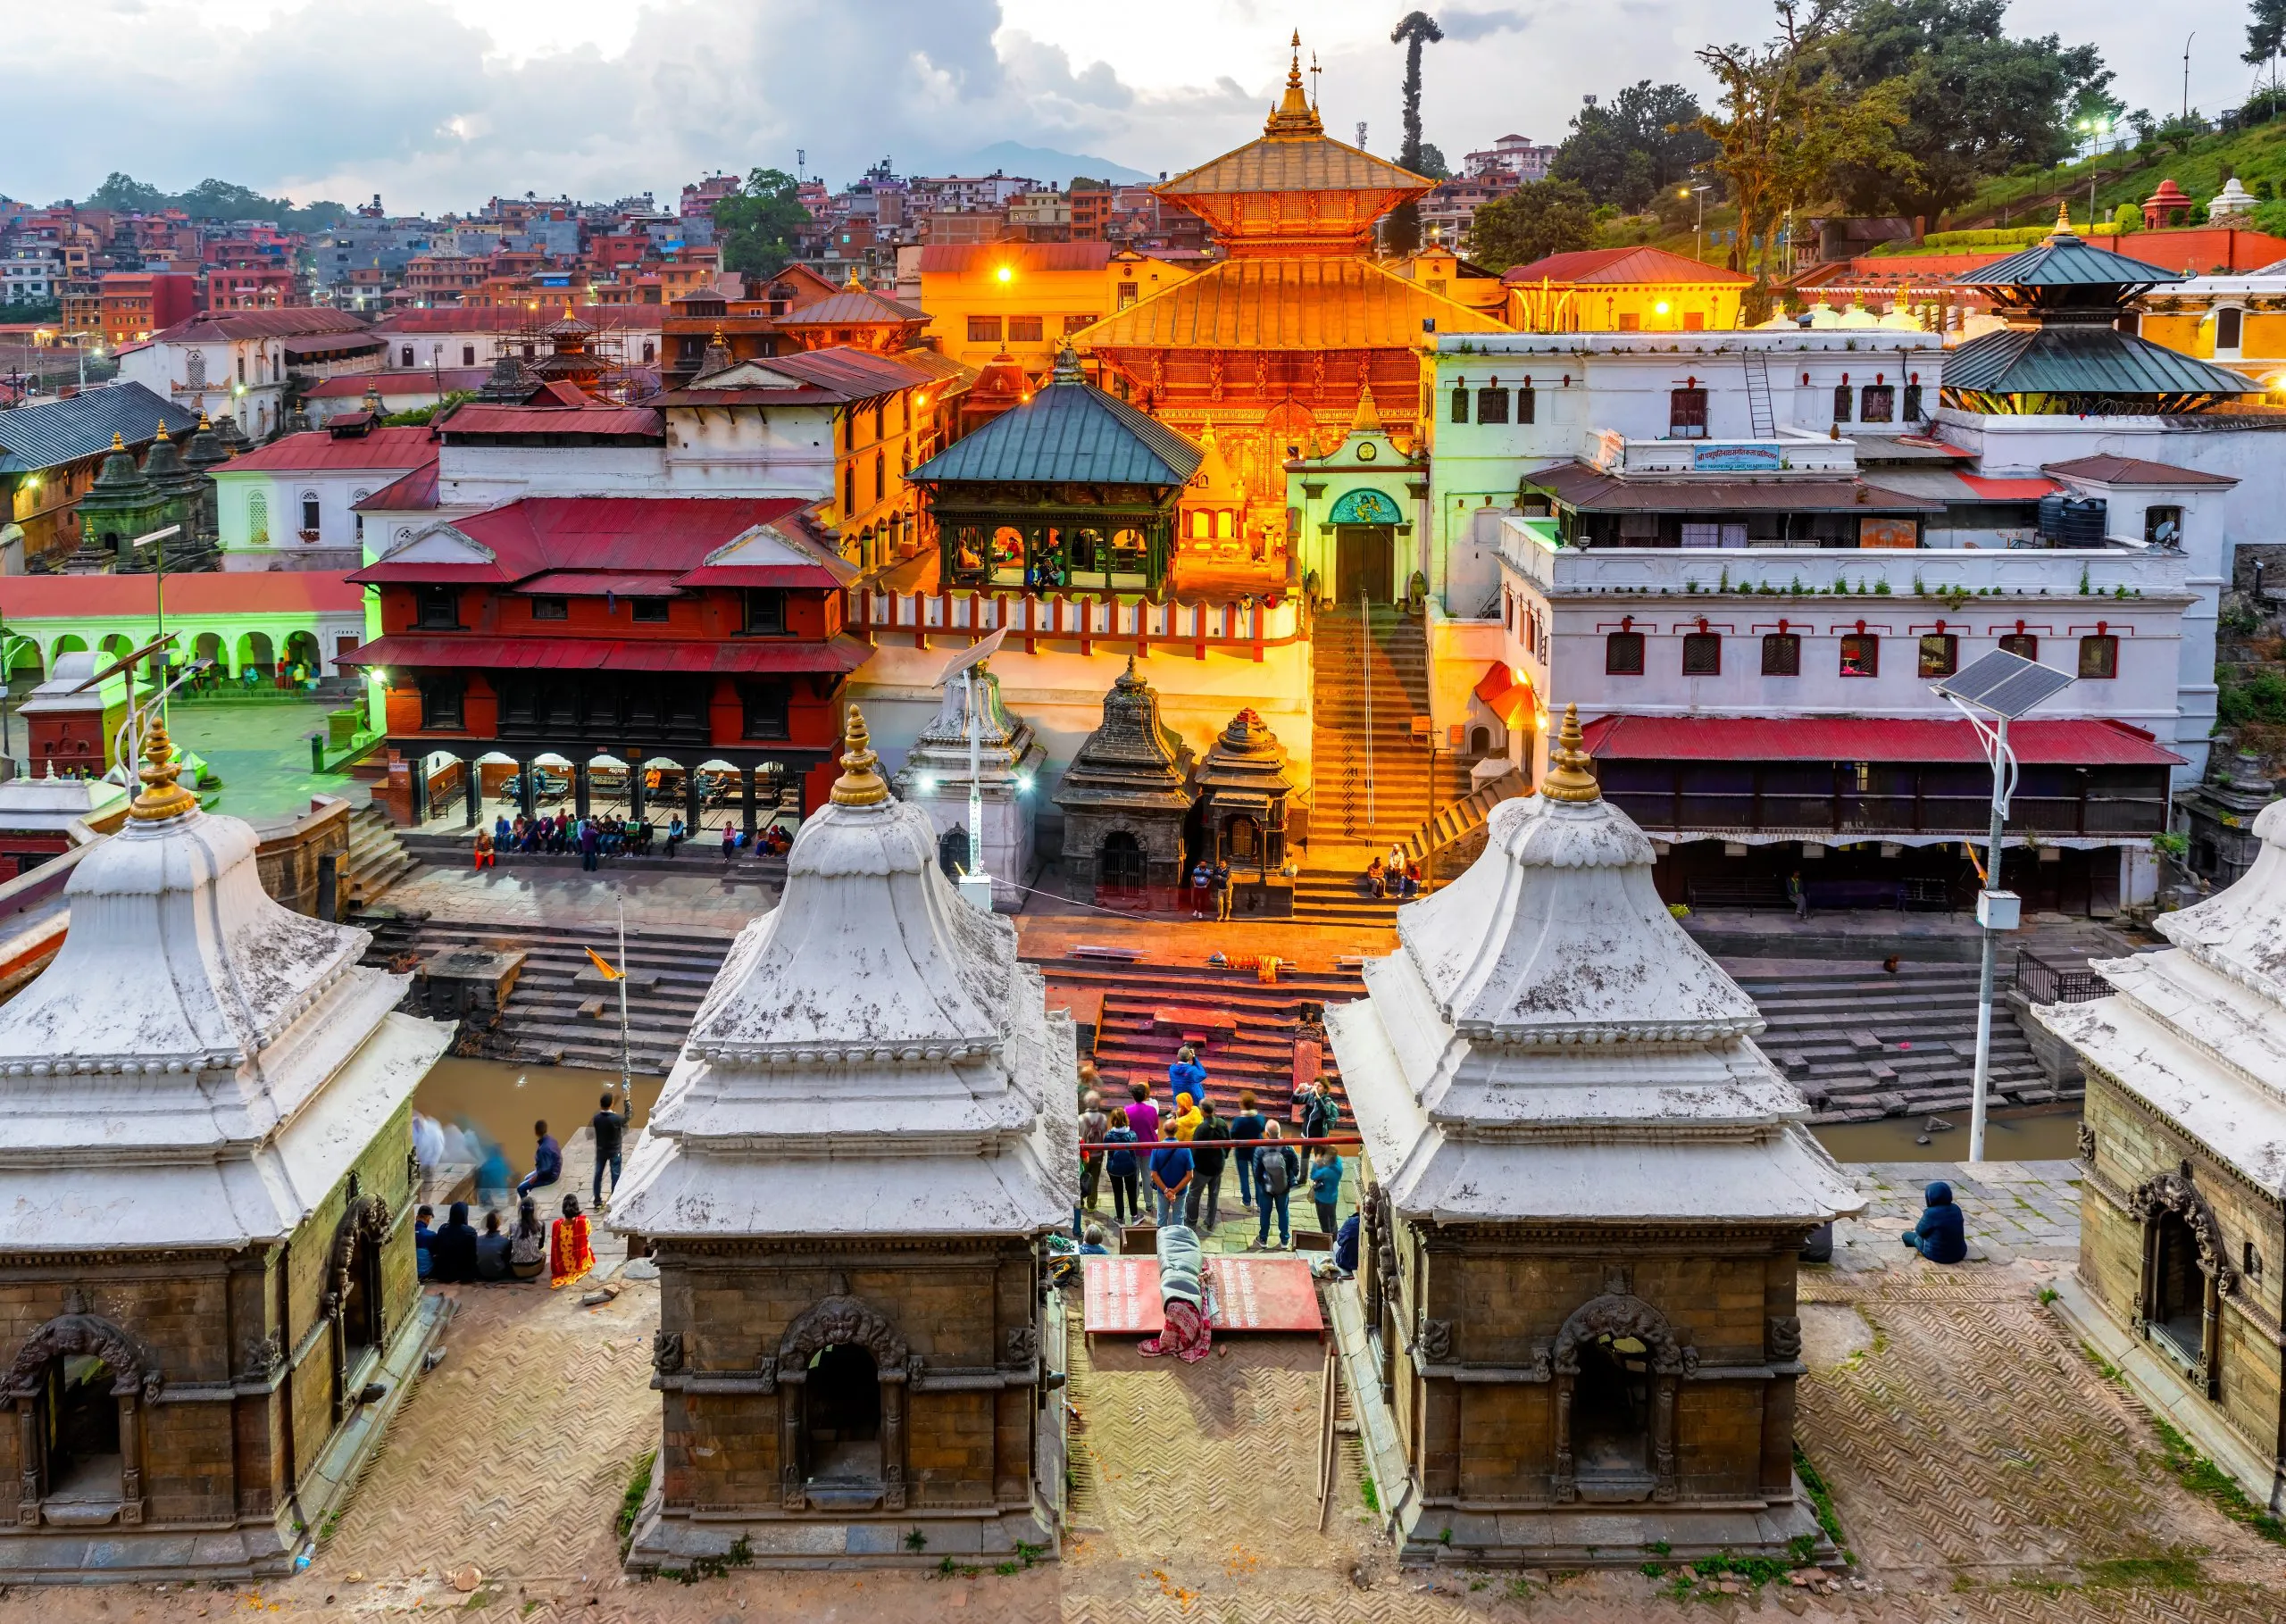 Pashupatinath temple in Kathmandu, Nepal